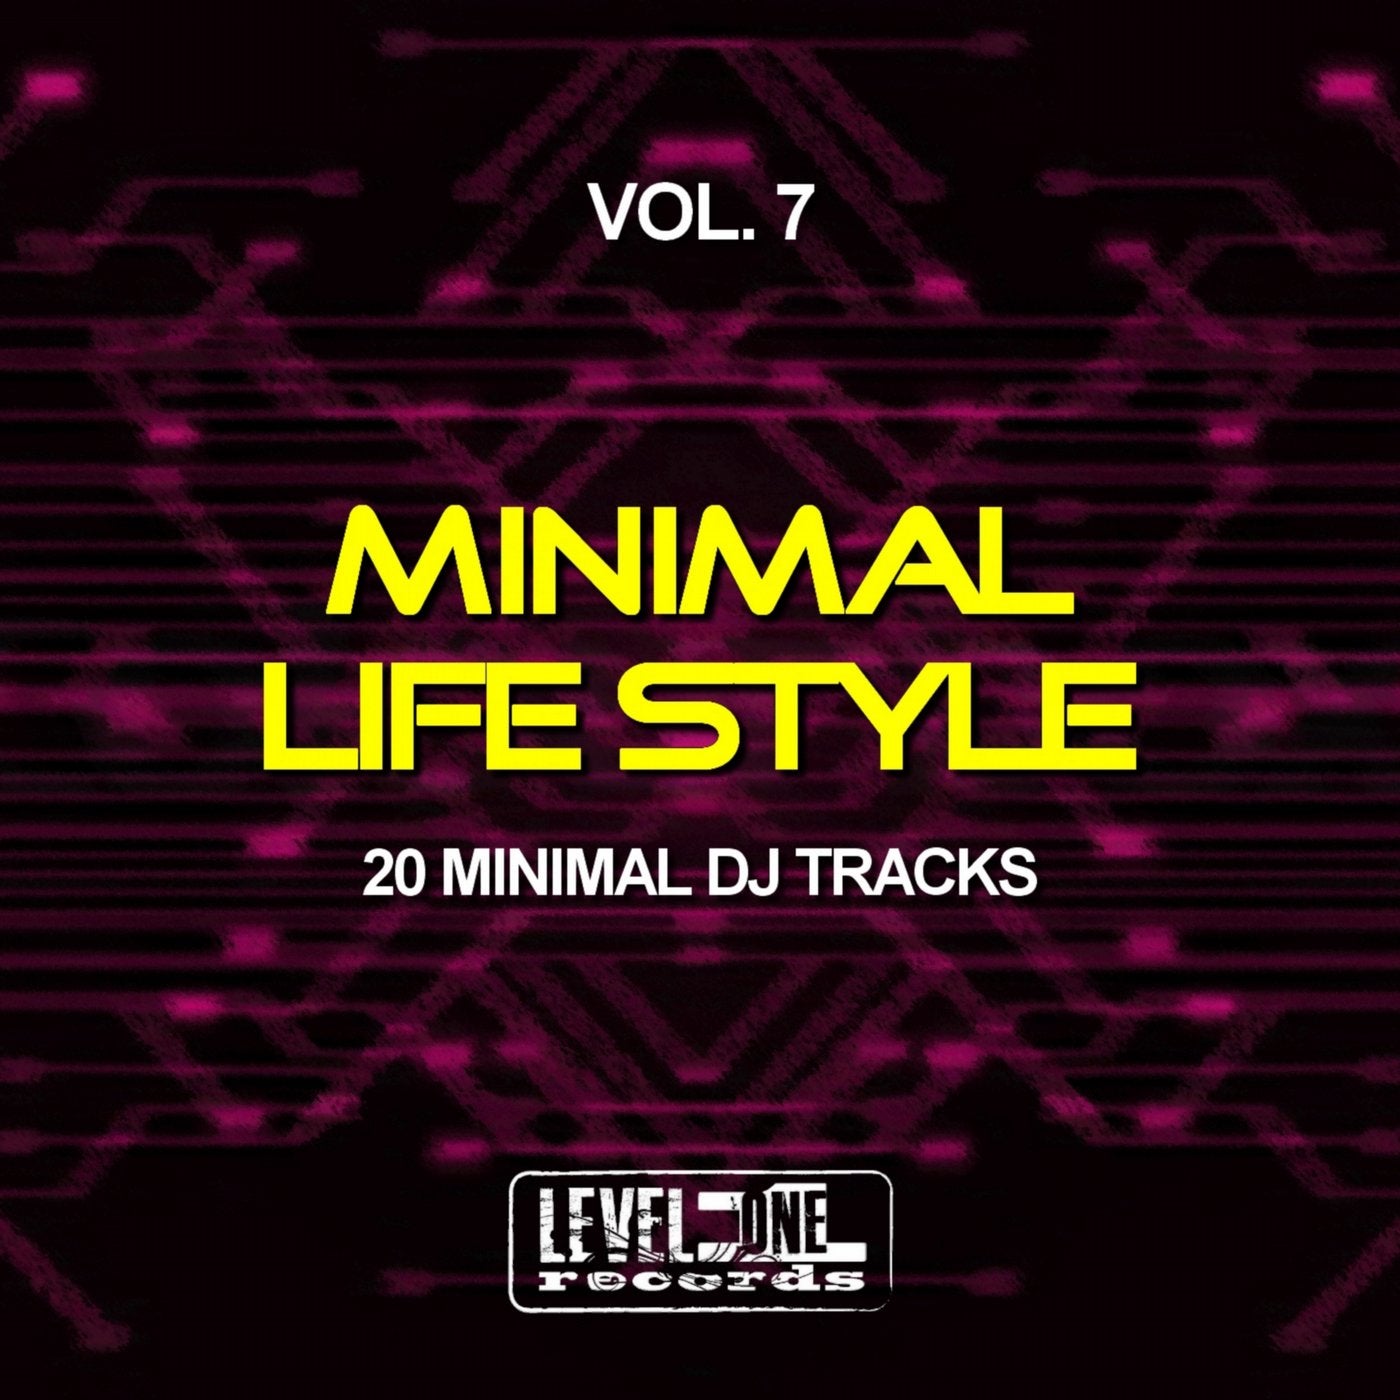 Minimal Life Style, Vol. 7 (20 Minimal DJ Tracks)